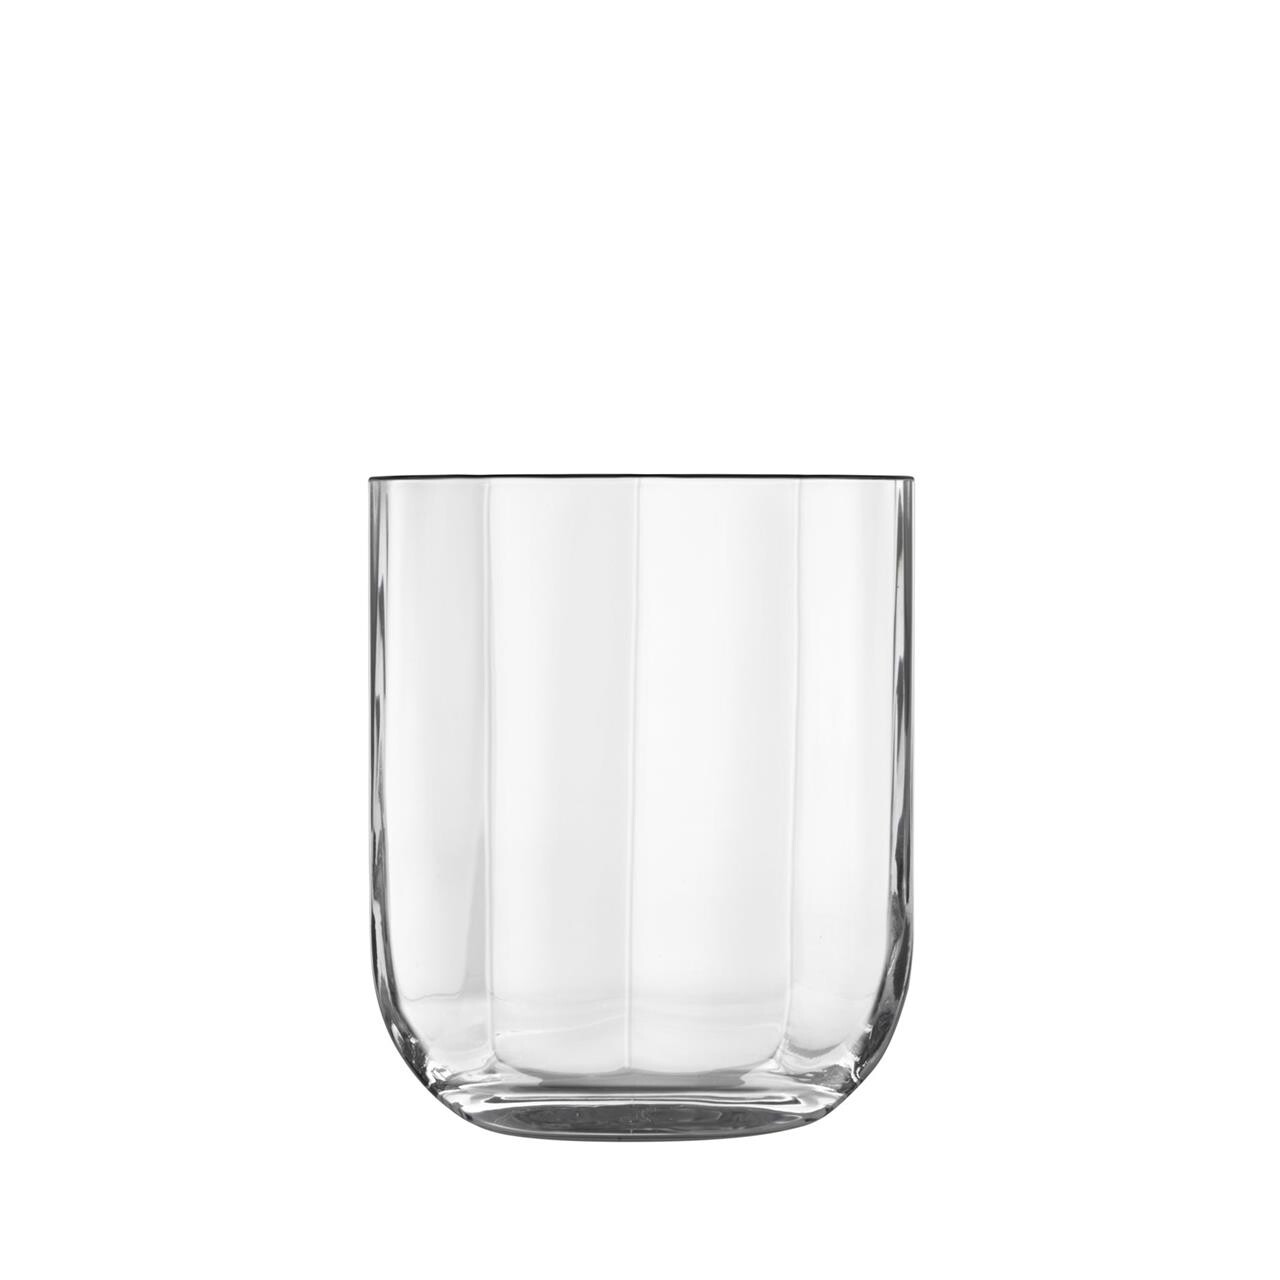 LUIGI BORMIOLI Jazz vandglas/whiskyglas 4 stk